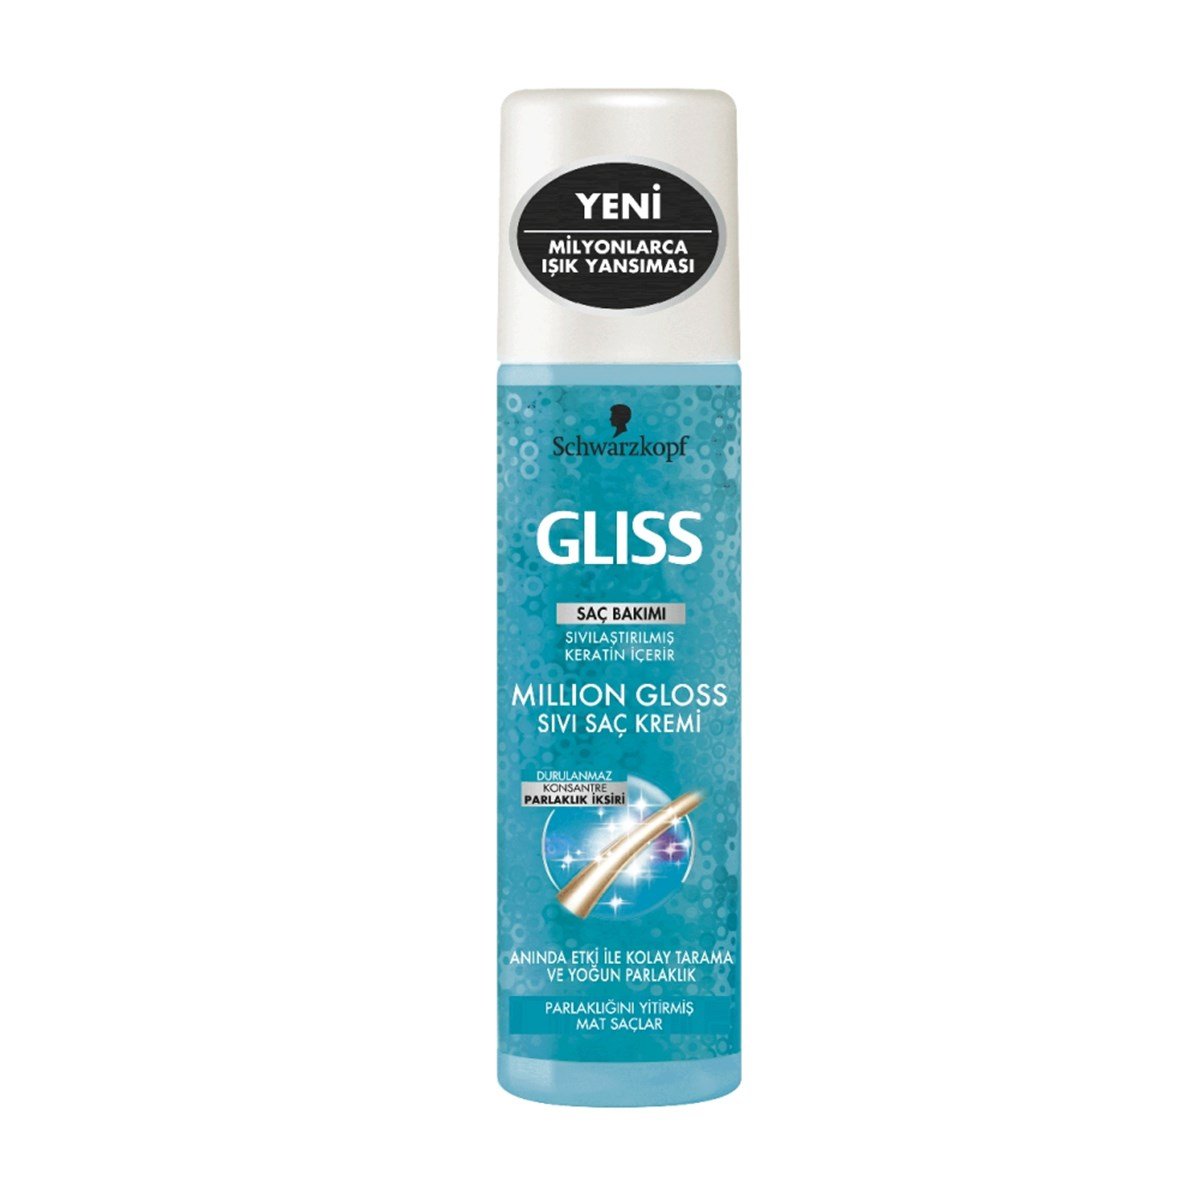 Gliss Sıvı Saç Kremi Million Gloss 200 Ml - Platin